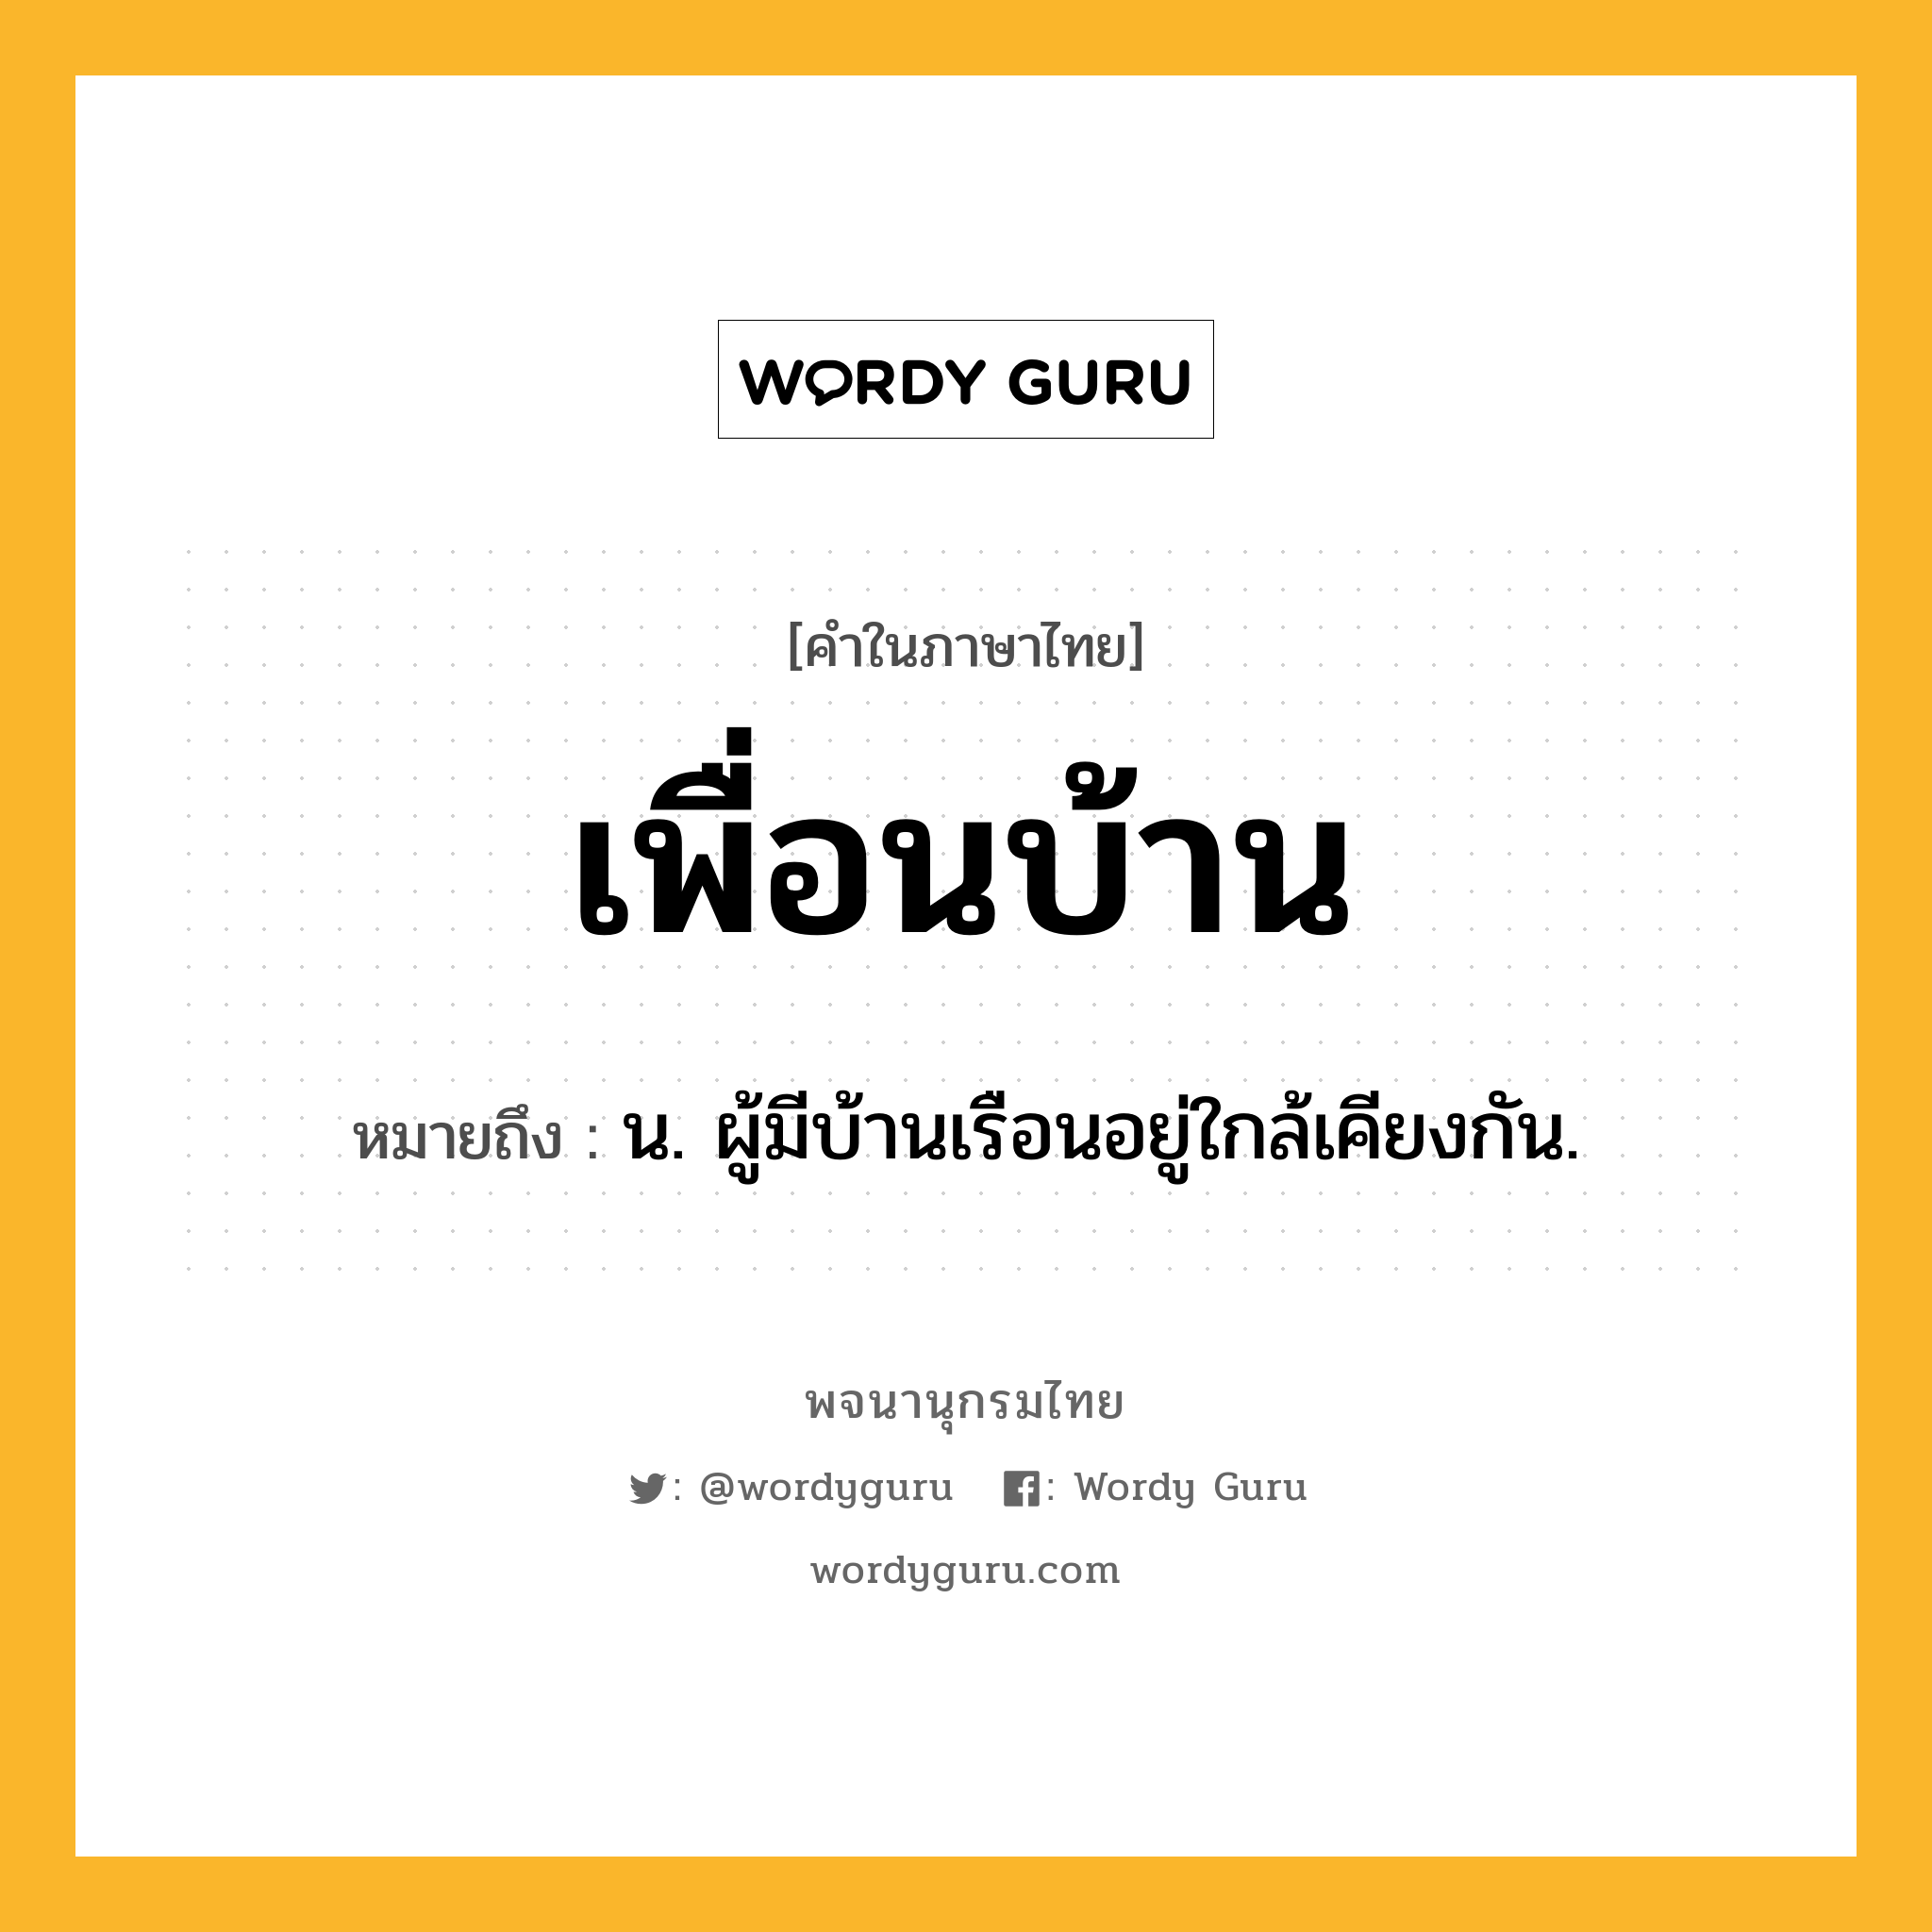 เพื่อนบ้าน ความหมาย หมายถึงอะไร?, คำในภาษาไทย เพื่อนบ้าน หมายถึง น. ผู้มีบ้านเรือนอยู่ใกล้เคียงกัน.